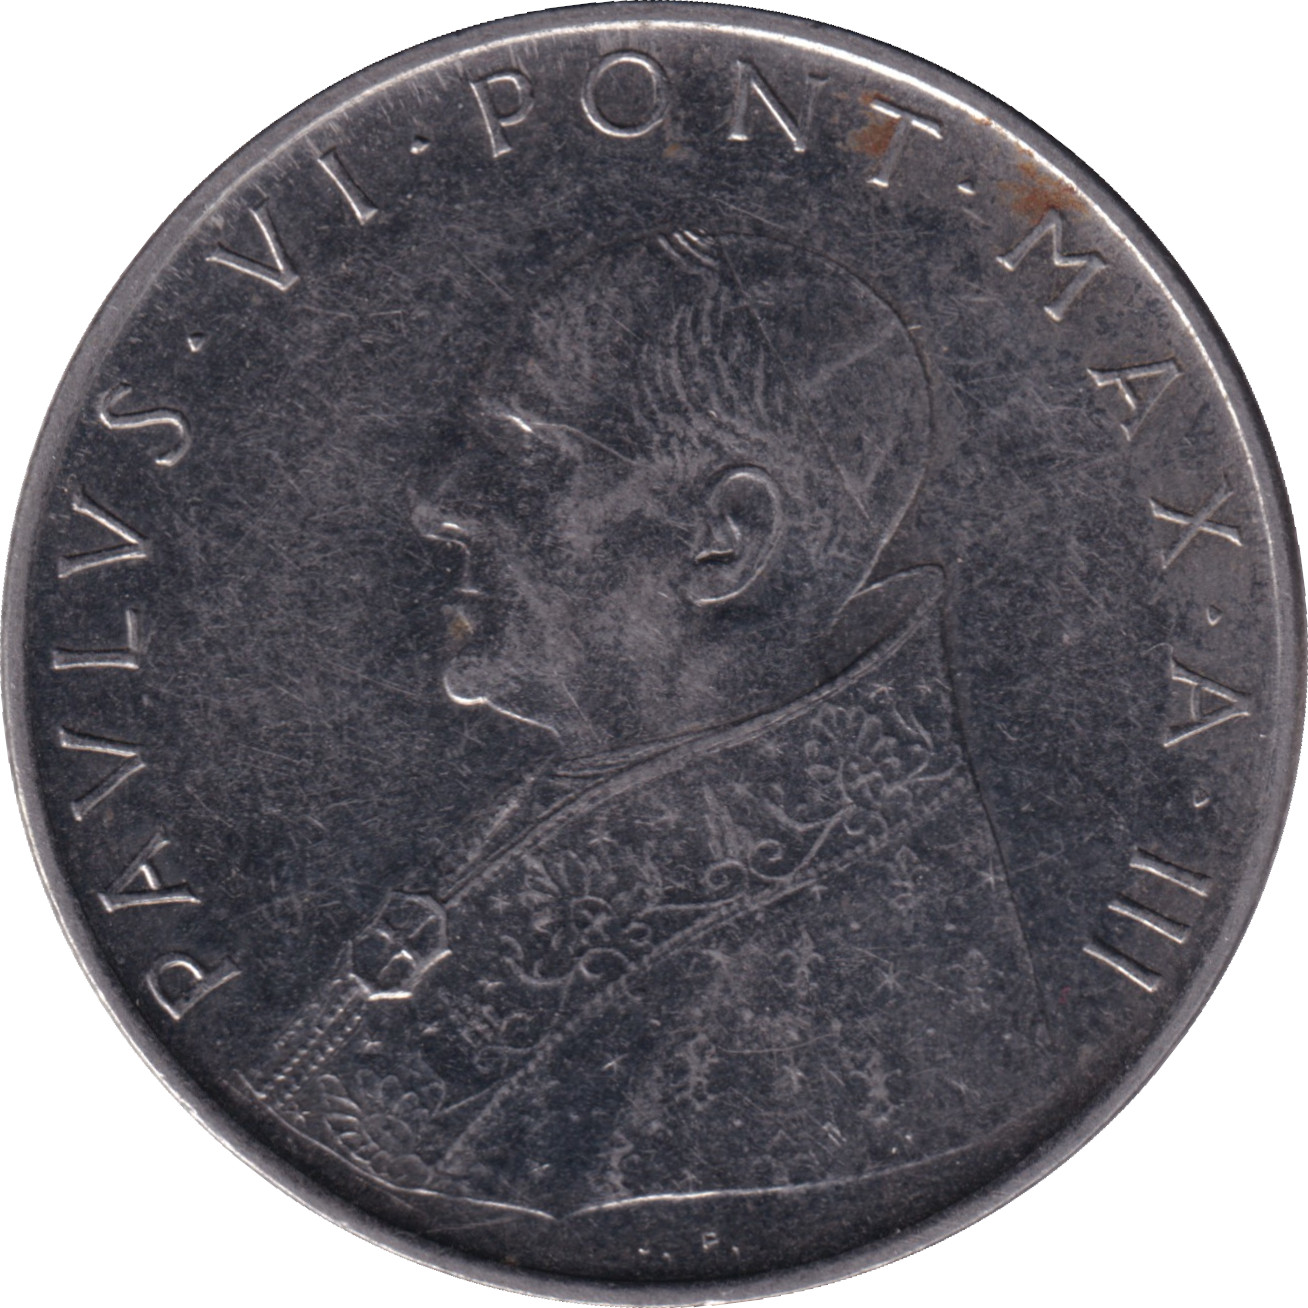 100 lire - Paul VI - Foi